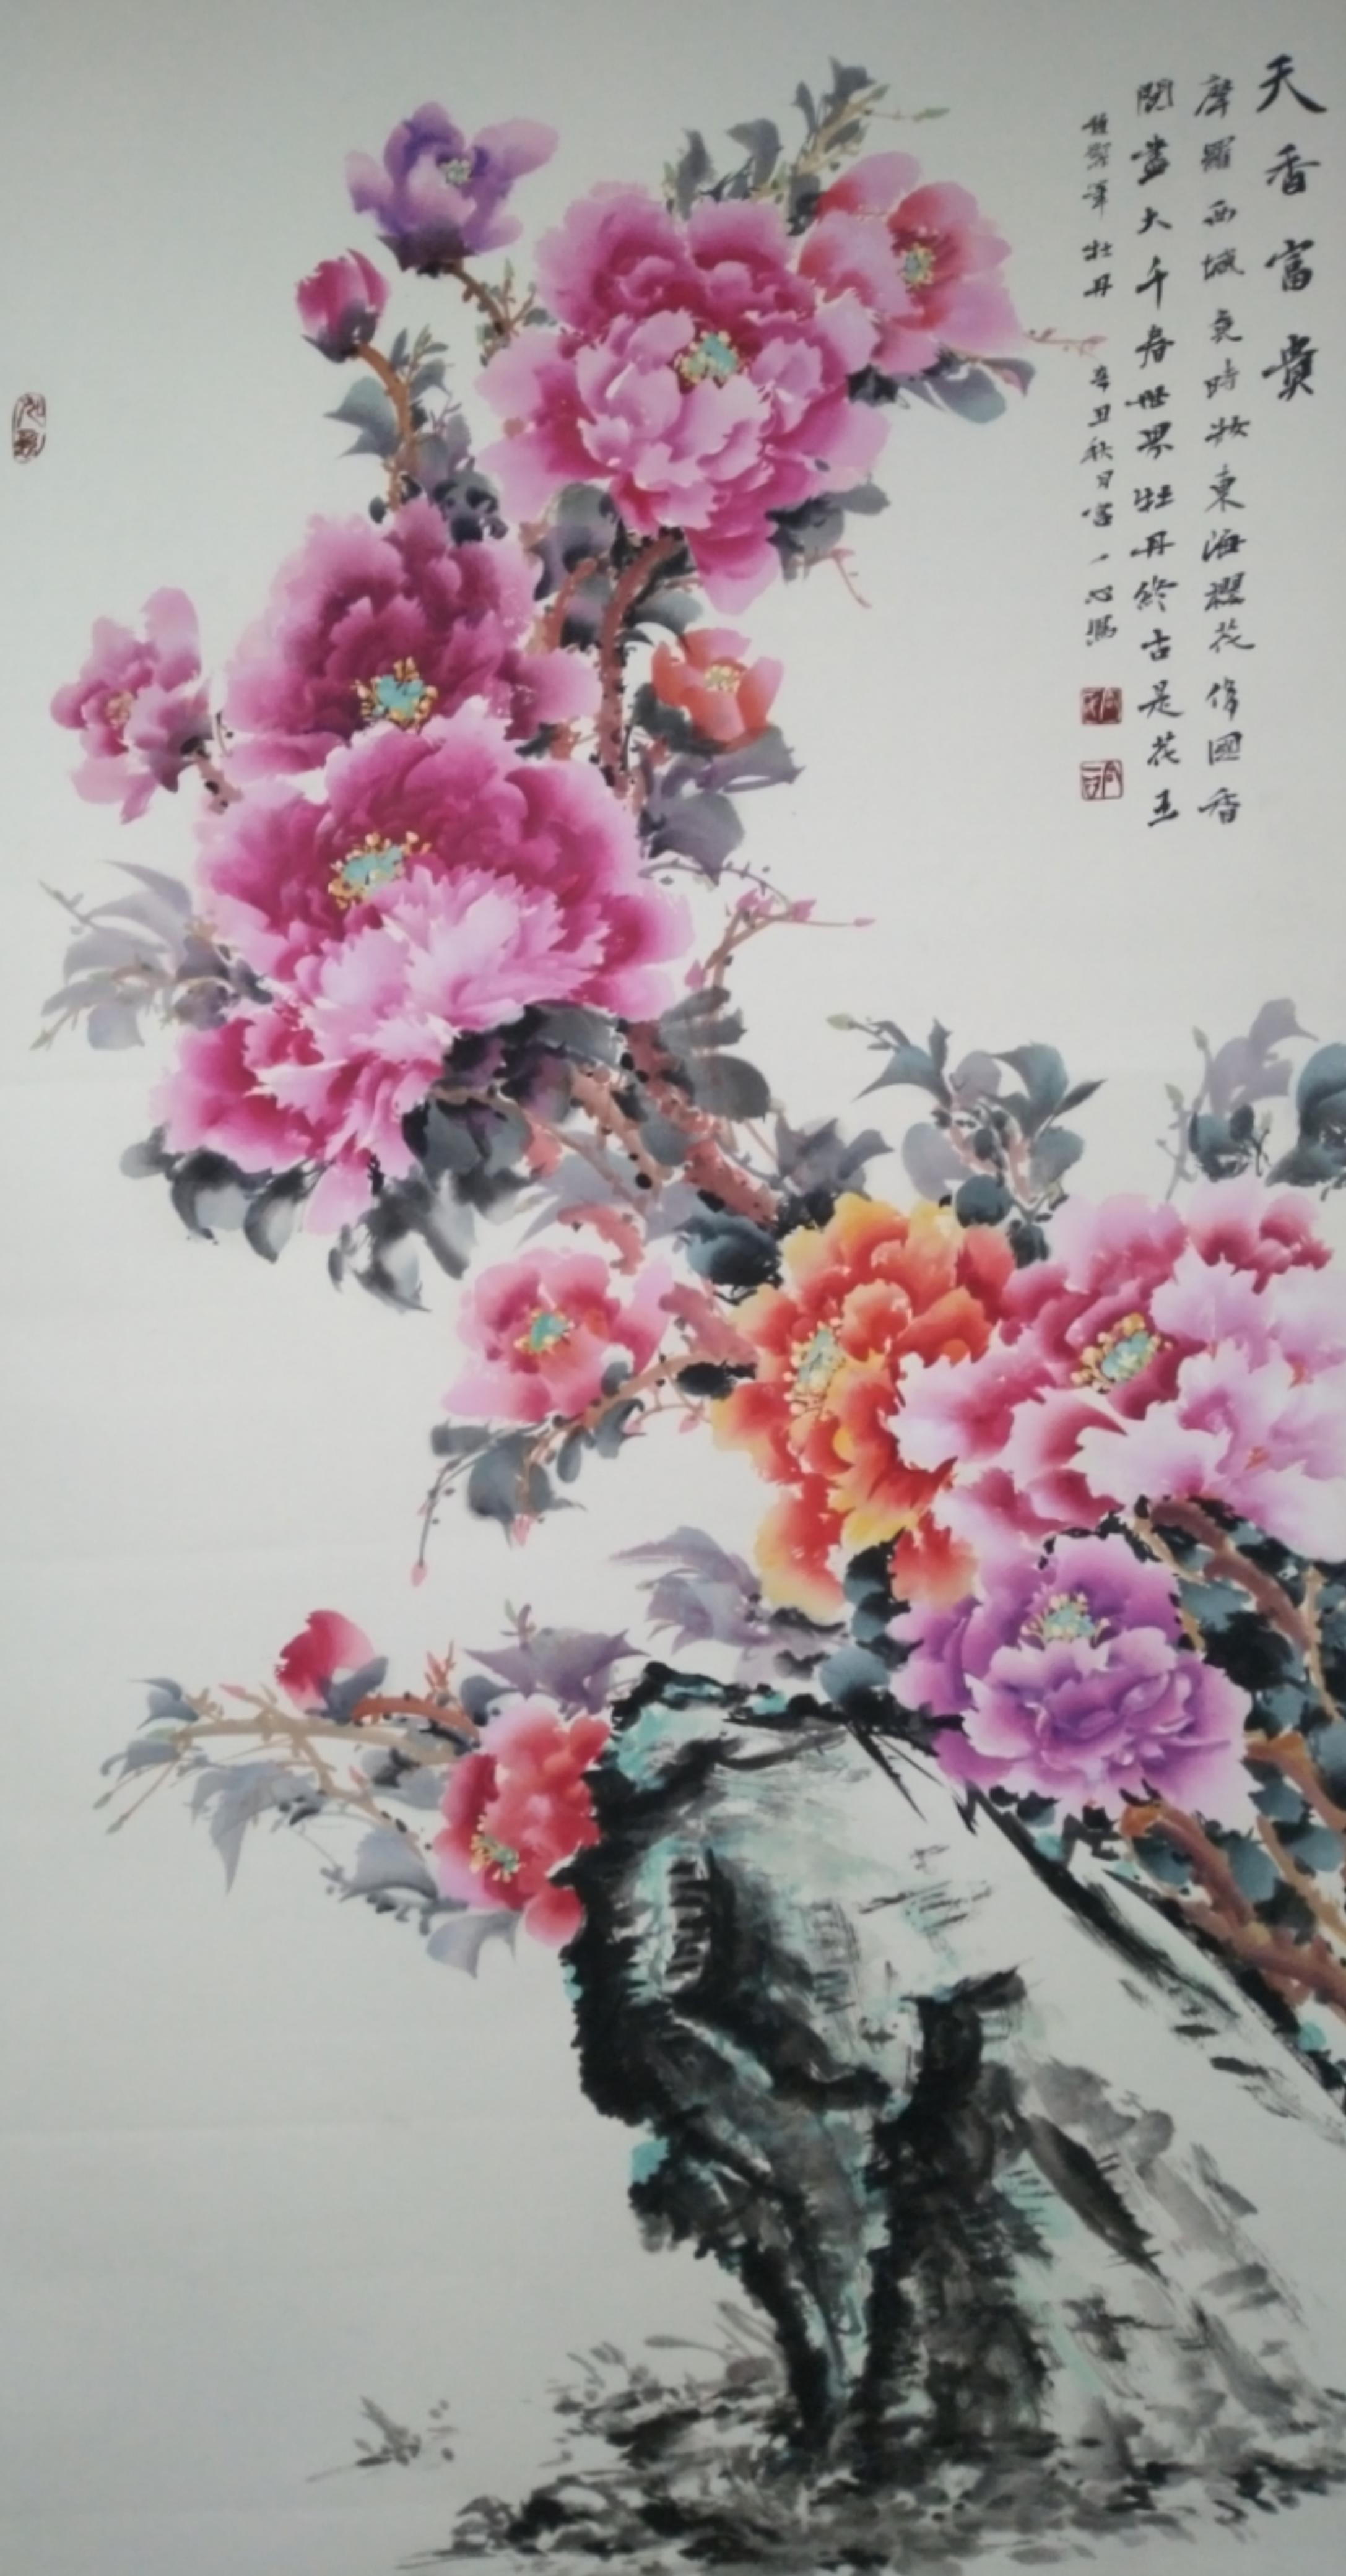 中国书画艺术名家 宫一心 印象